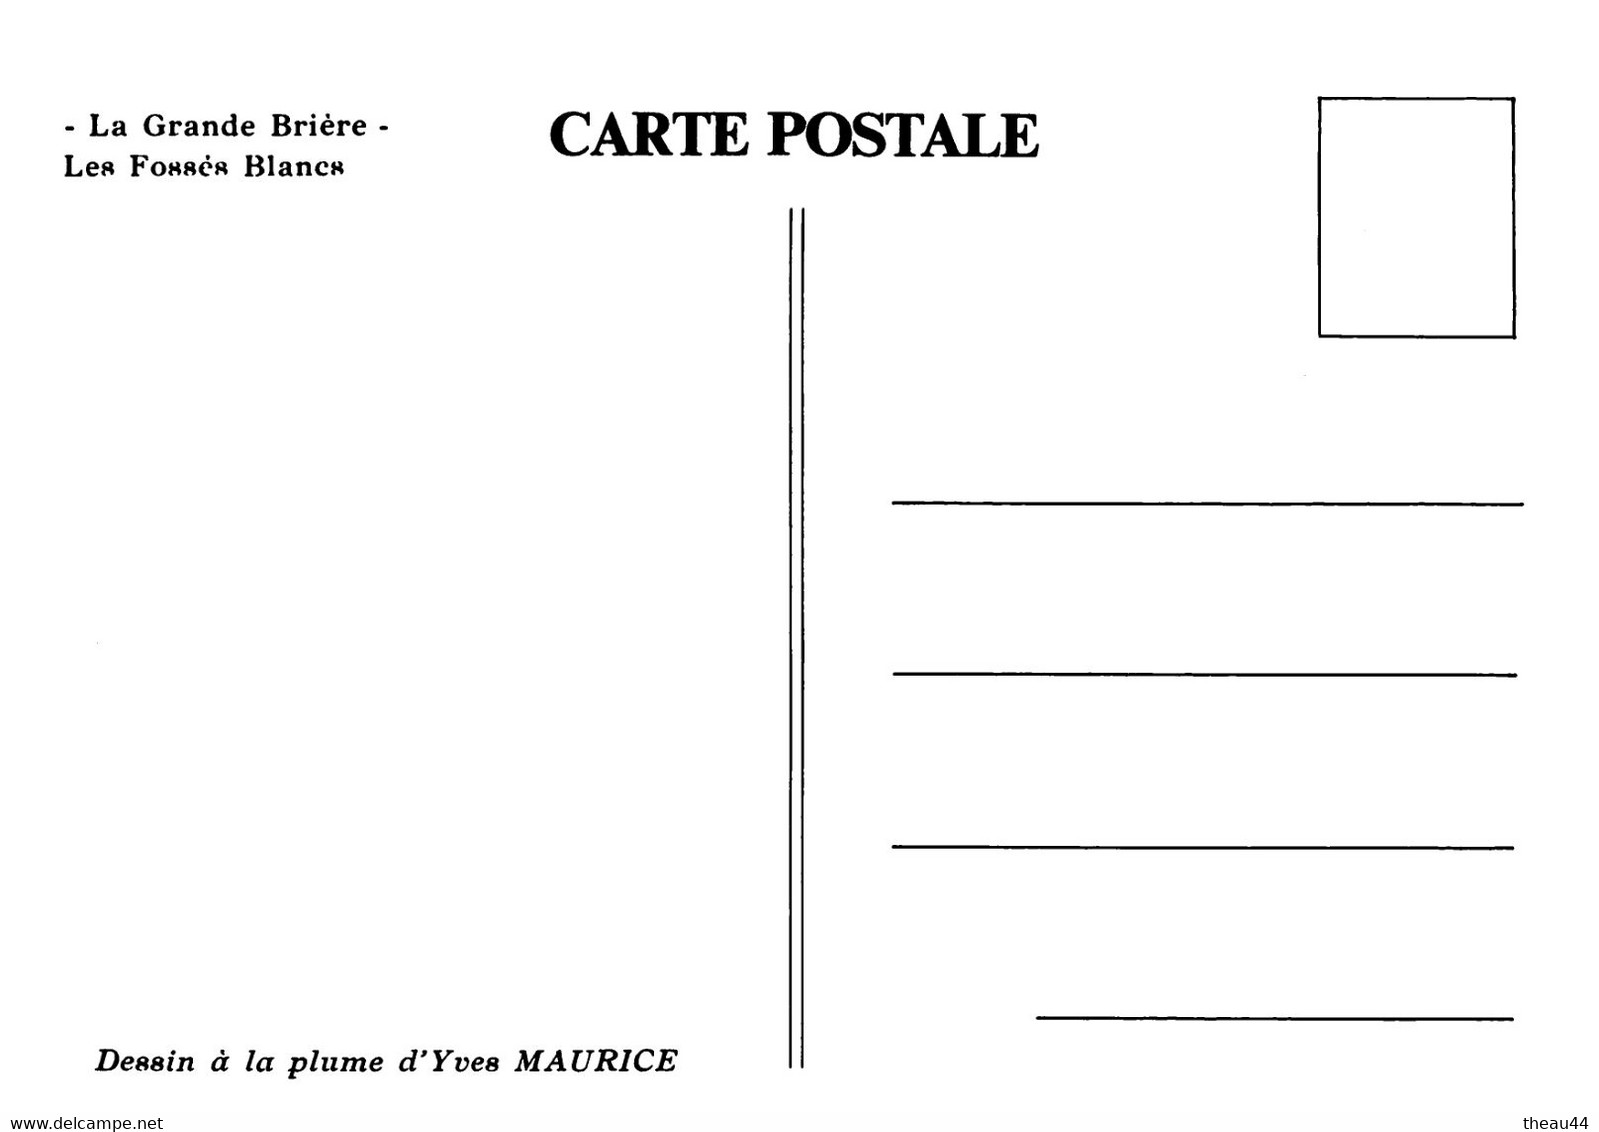 SAINT-LYPHARD  -  Lot de 8 Cartes de la Grande Brière  -  Le Village de KERHINET -  Illustrateur " Yves MAURICE "